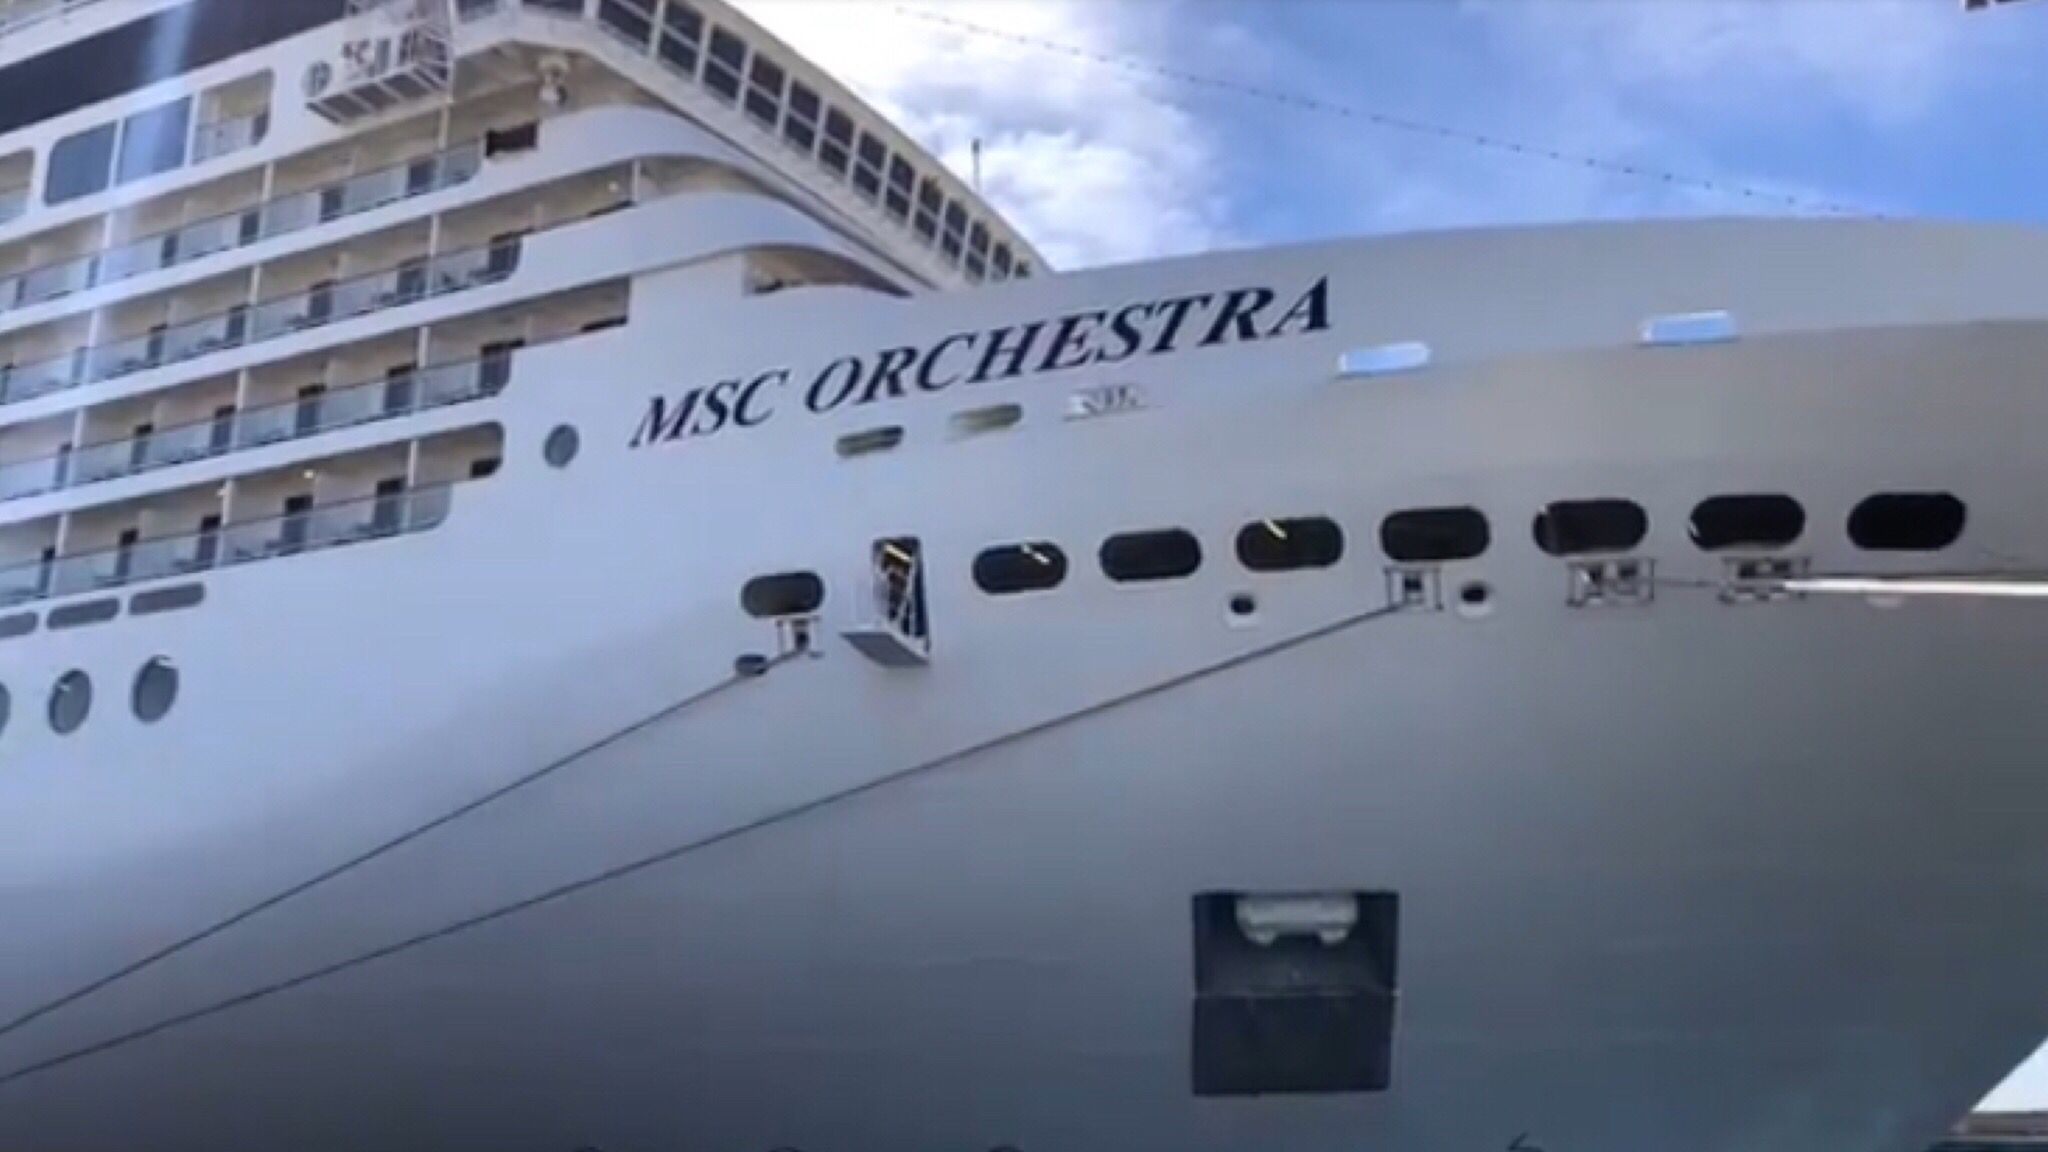 Olbia: arrivata la MSC Orchestra con 2.500 passeggeri